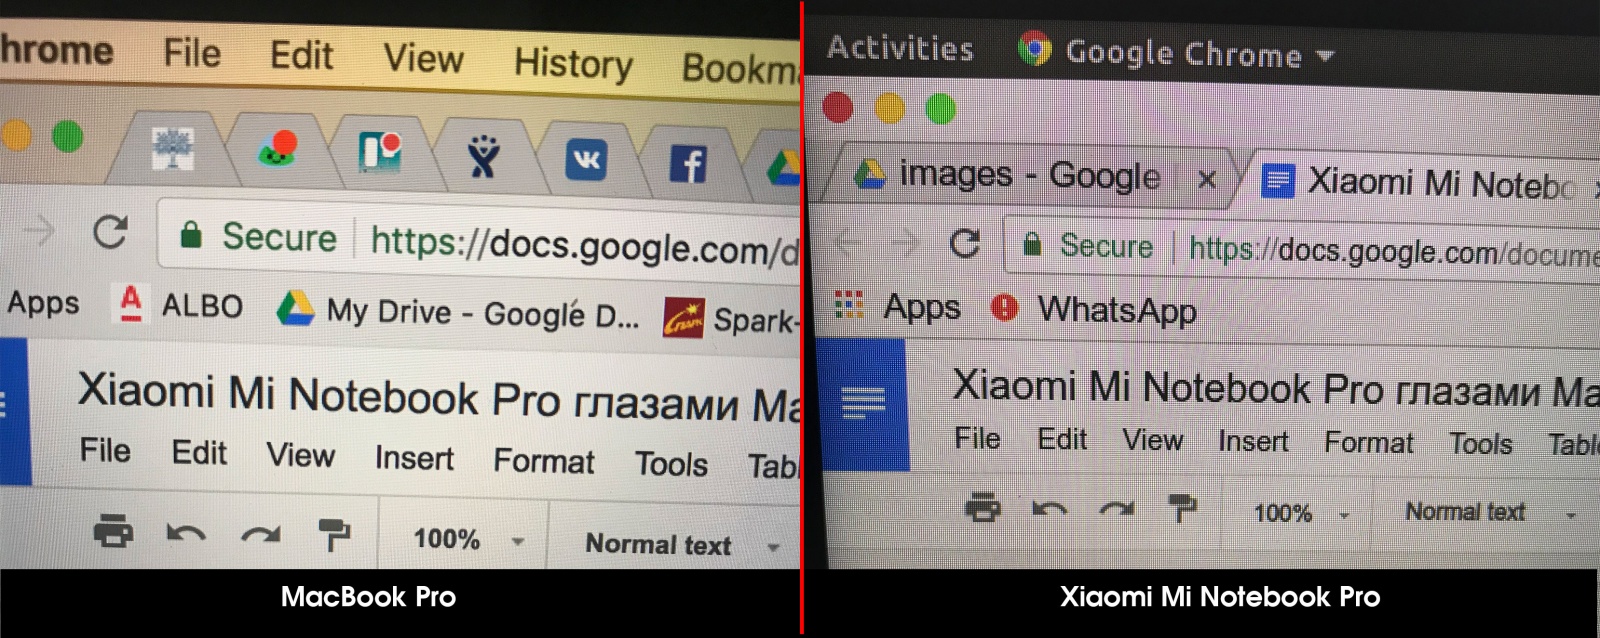 Xiaomi Mi Notebook Pro как основной инструмент веб-разработчика (глазами маковода) - 11